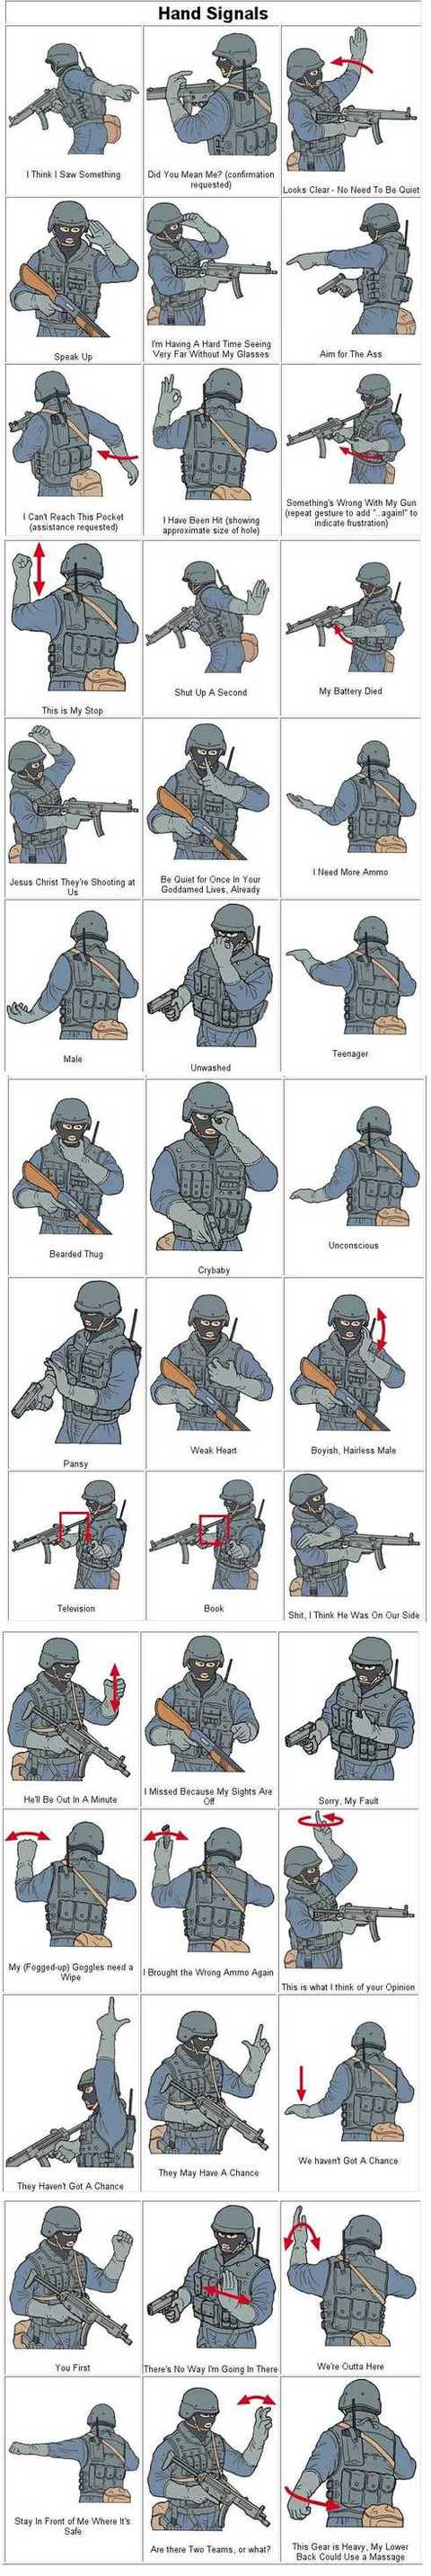 swat-hand-signals